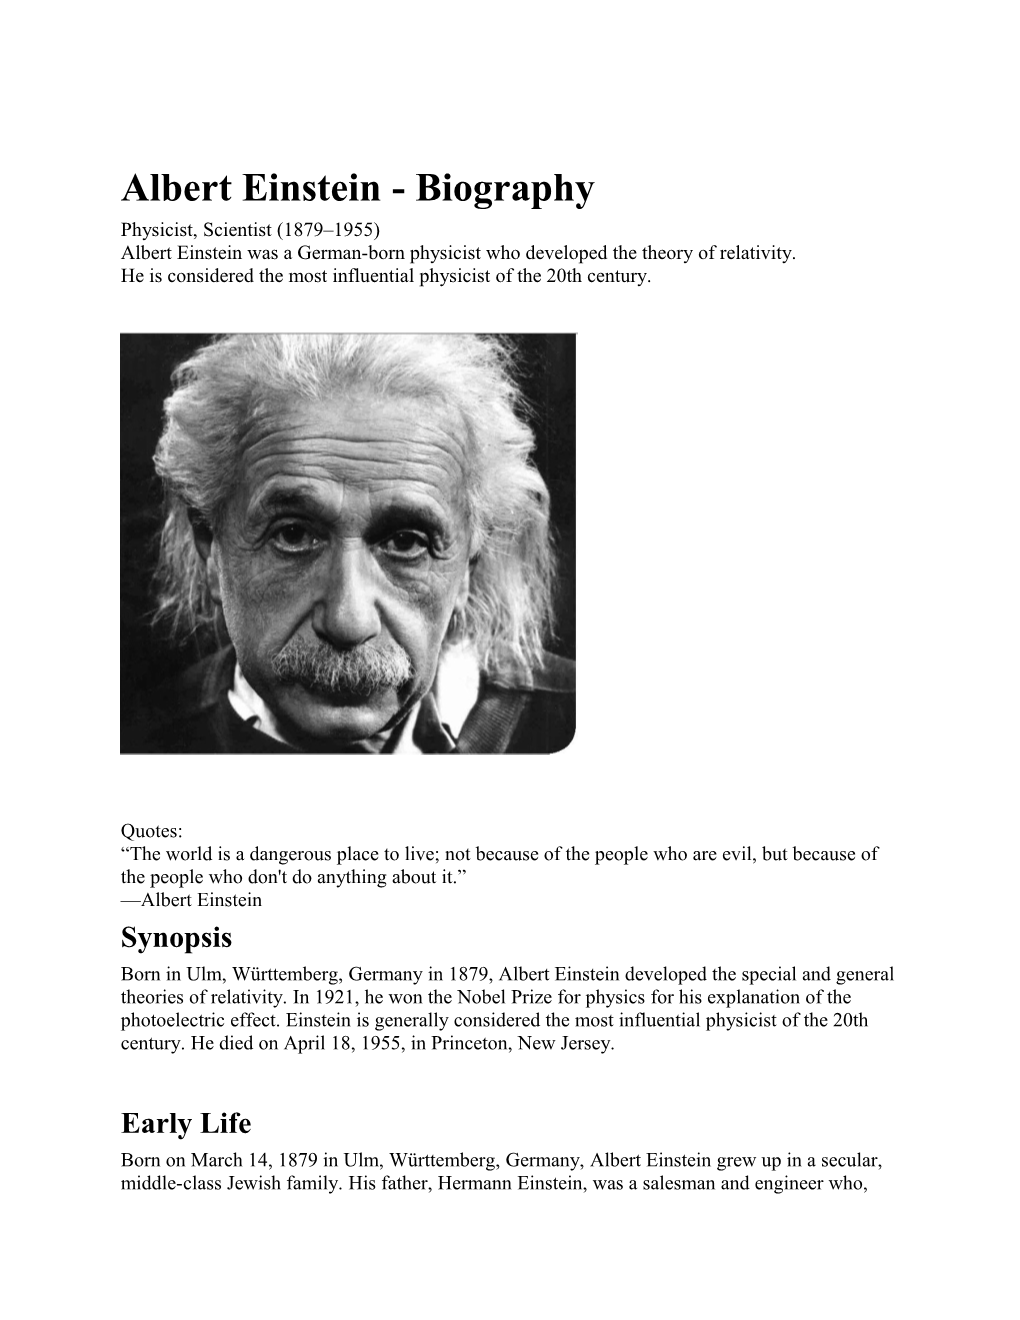 Albert Einstein- Biography